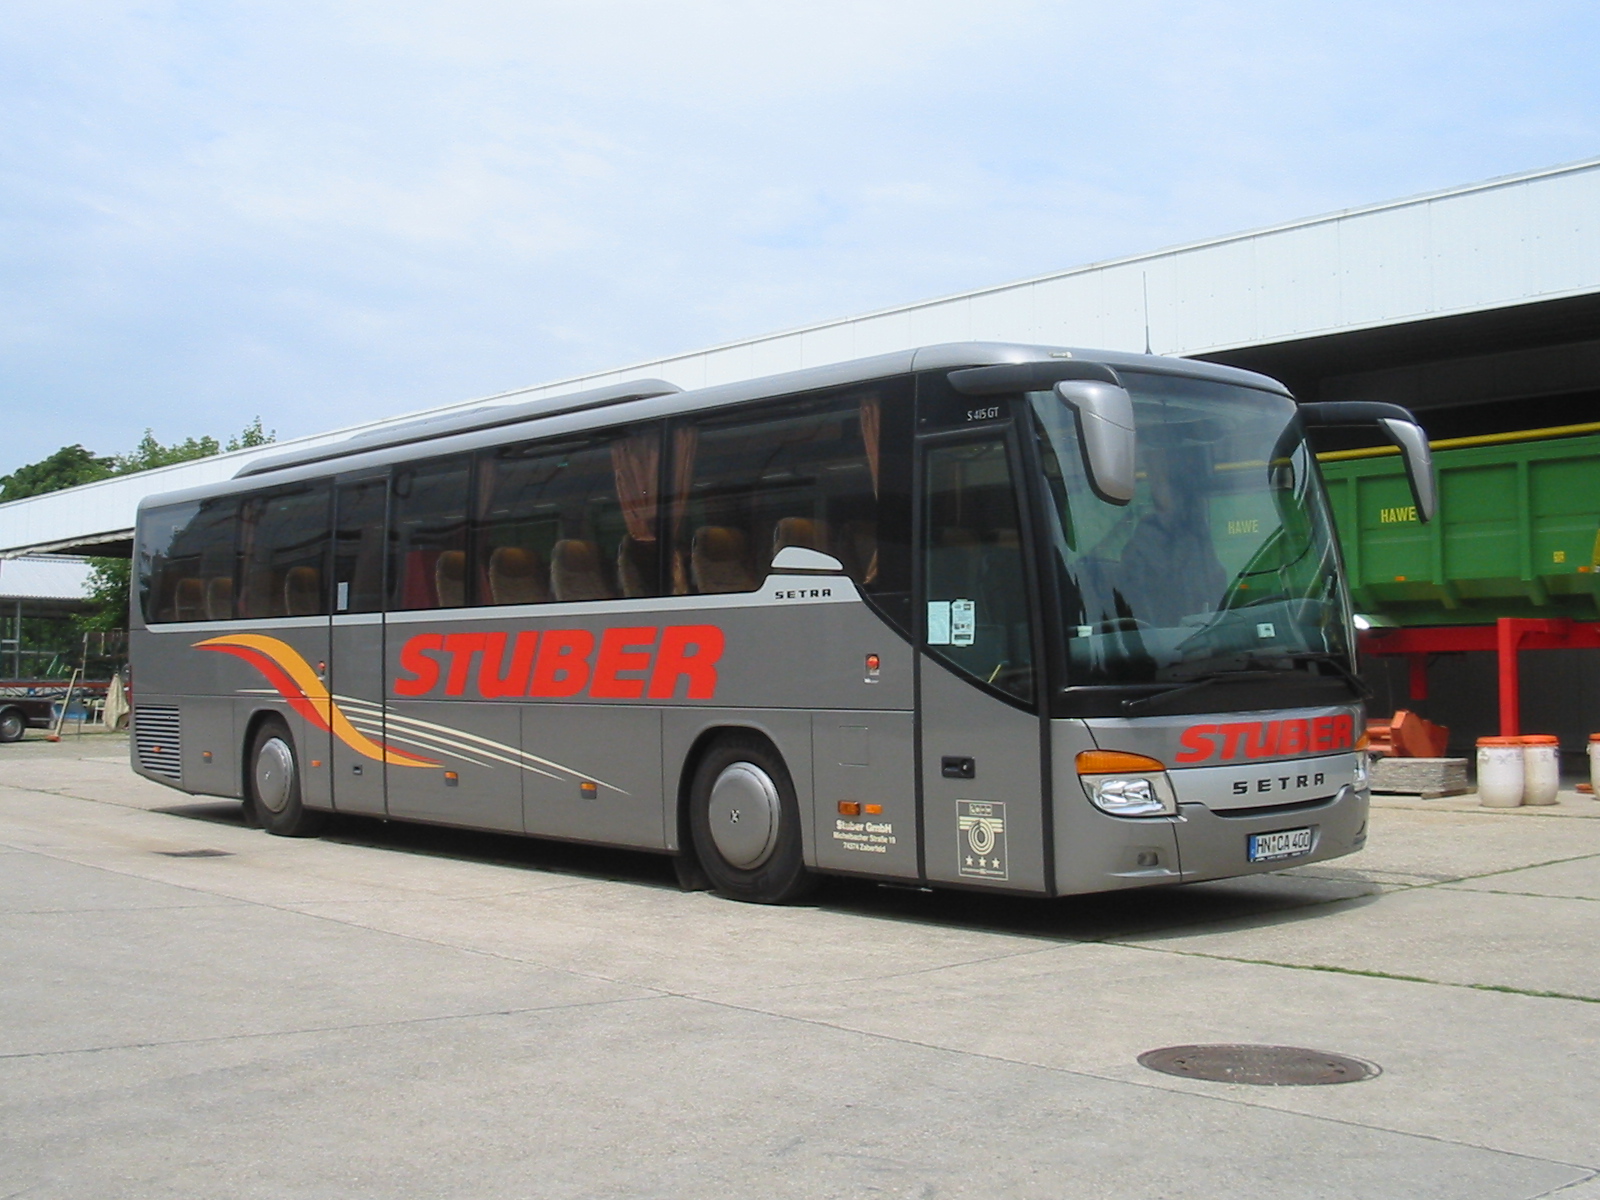 File:Setra-Reisebus S 415 GT - Stuber-Reisen.jpg - Wikimedia Commons